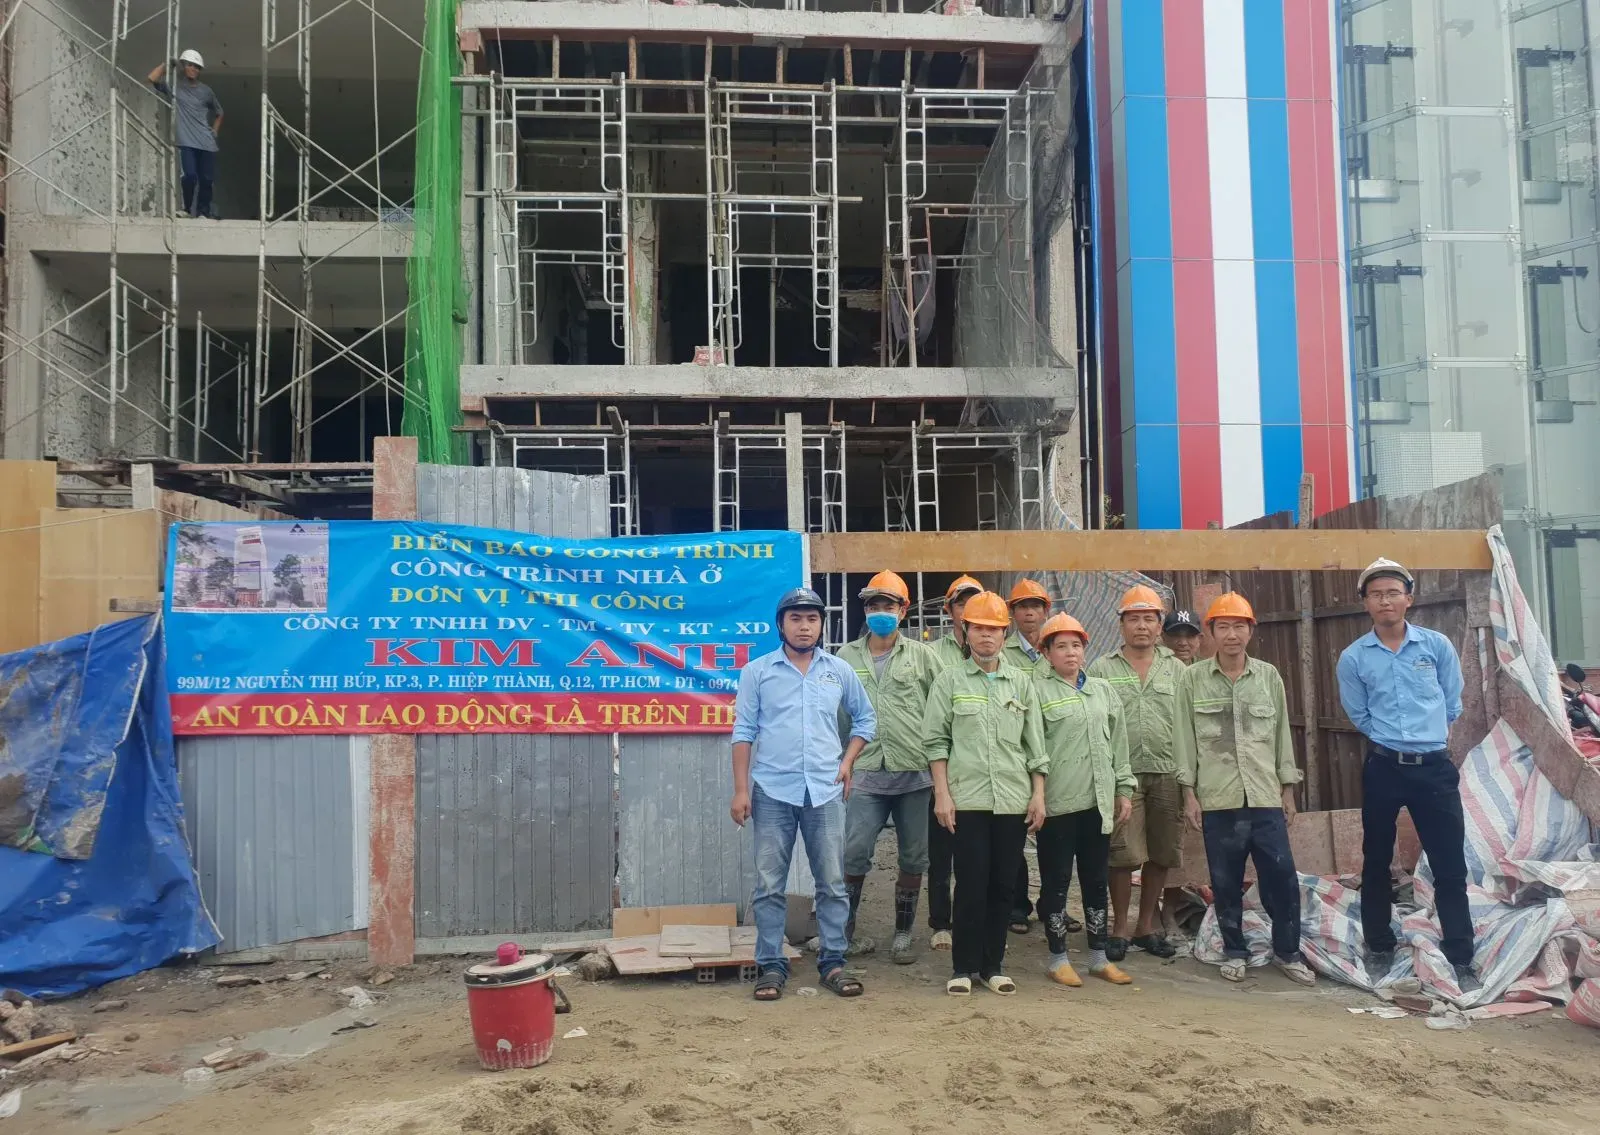 Xây Dựng Kim Anh: Công ty xây dựng nhà uy tín Quận Tân Bình